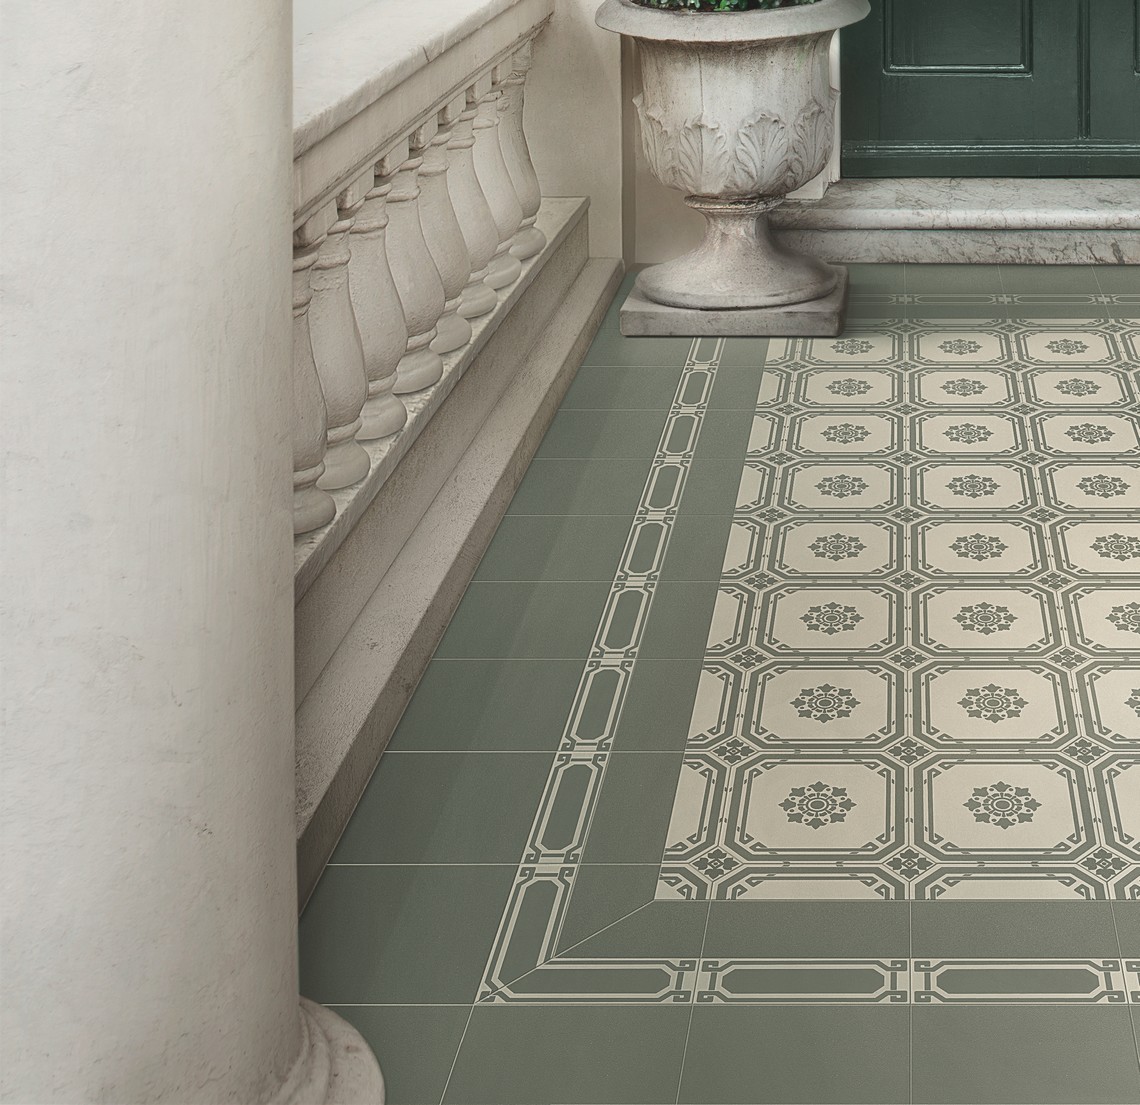 płytka Ceramiche Grazia Old England Bath przykładowa aranżacja wzorzystej podłogi w kolorze zielonym